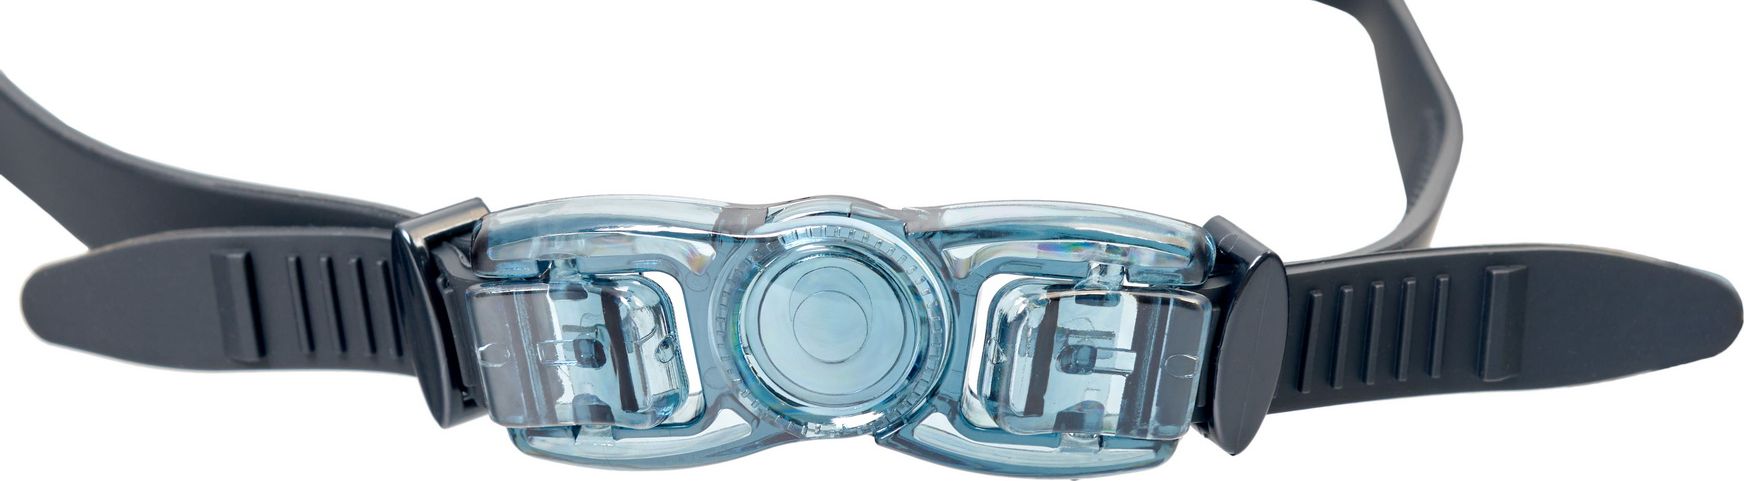 Очки для плавания Bradex, серия «Комфорт Плюс», черные, цвет линзы-прозрачный